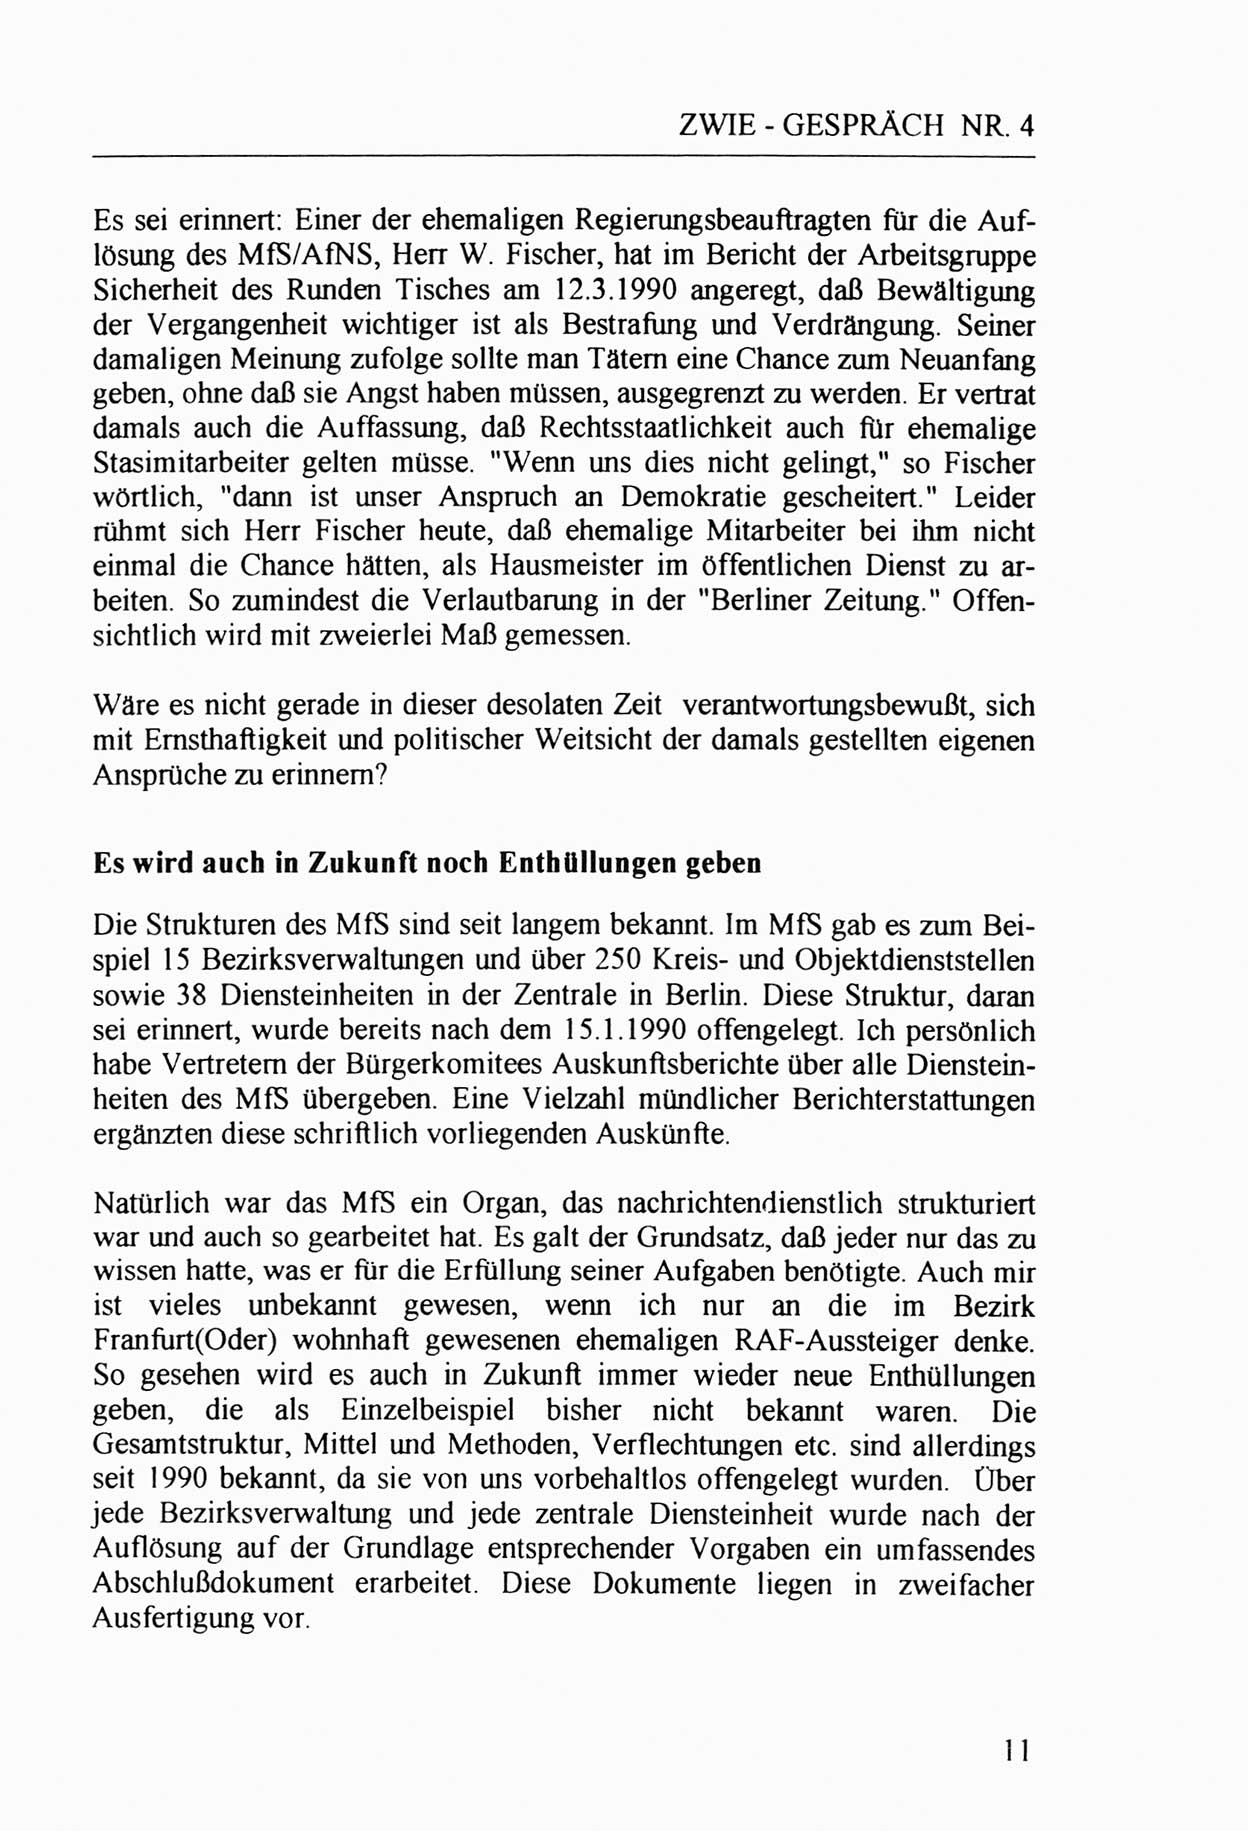 Zwie-Gespräch, Beiträge zur Aufarbeitung der Stasi-Vergangenheit [Deutsche Demokratische Republik (DDR)], Ausgabe Nr. 4, Berlin 1991, Seite 11 (Zwie-Gespr. Ausg. 4 1991, S. 11)